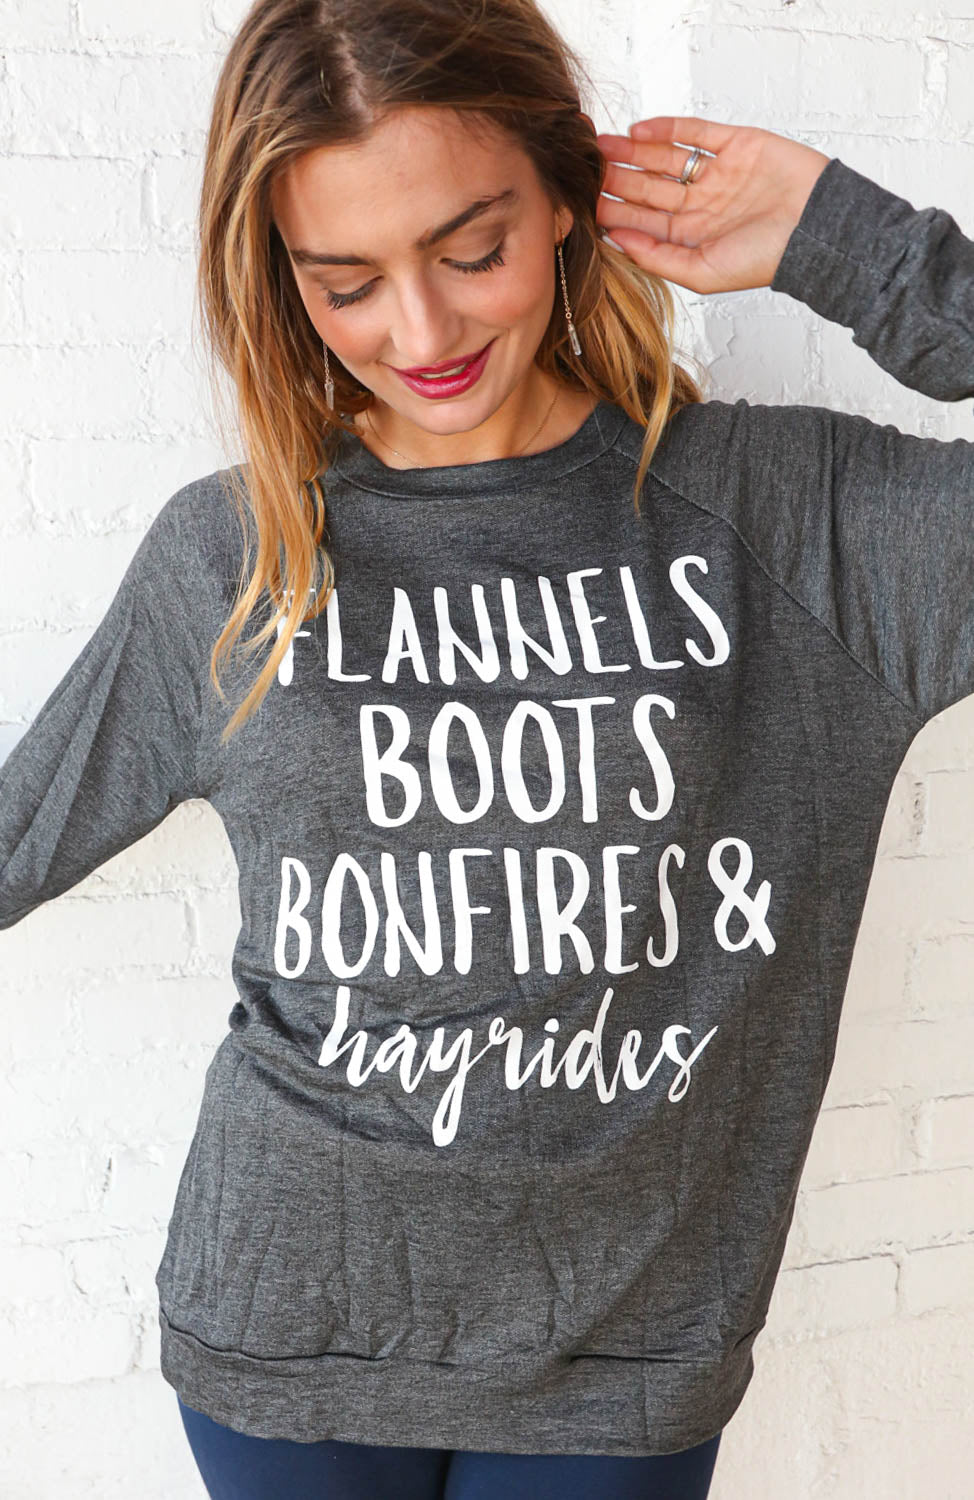 Flannel, Boots, Bonfires Autumn Graphic T-shirt